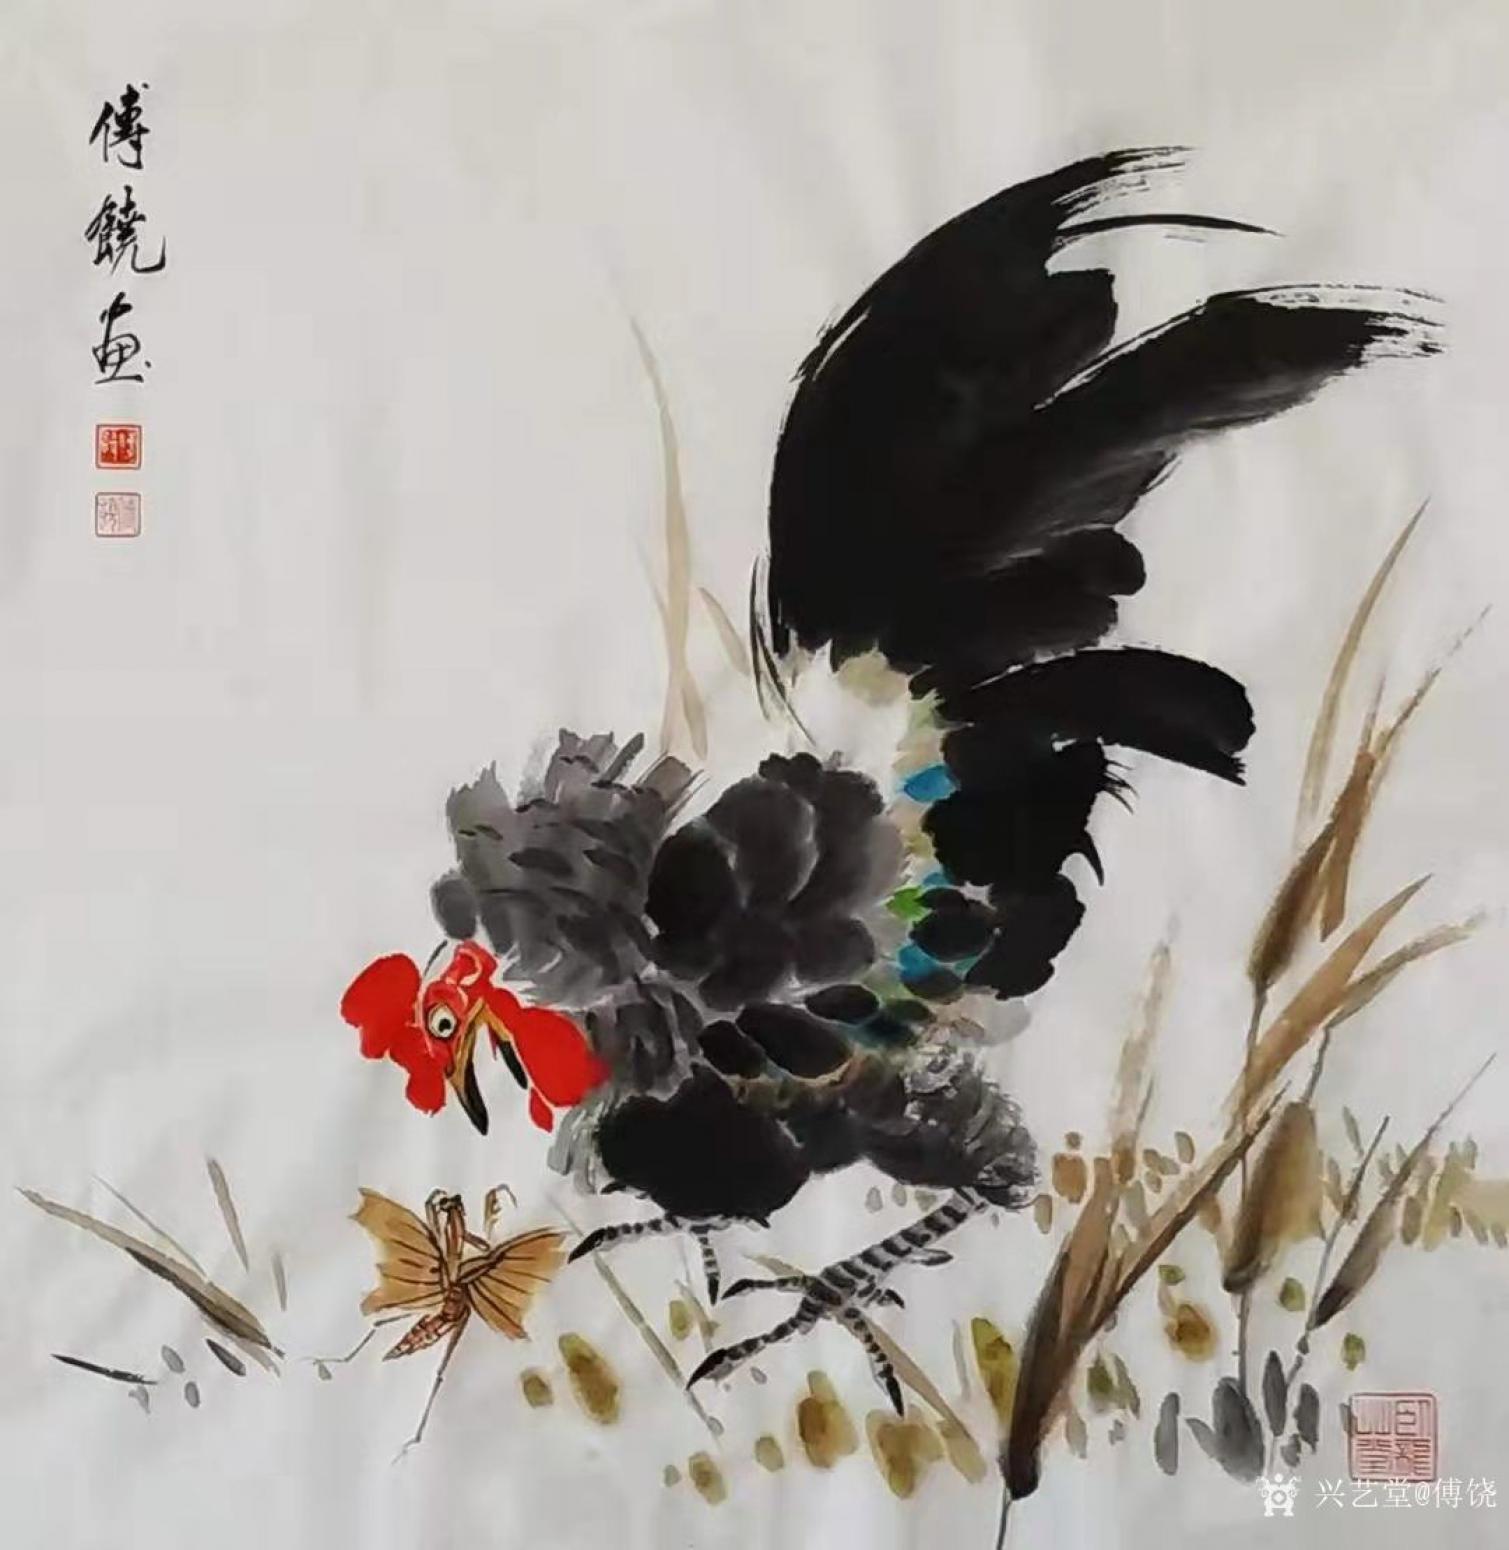 傅饶国画作品《战斗鸡》